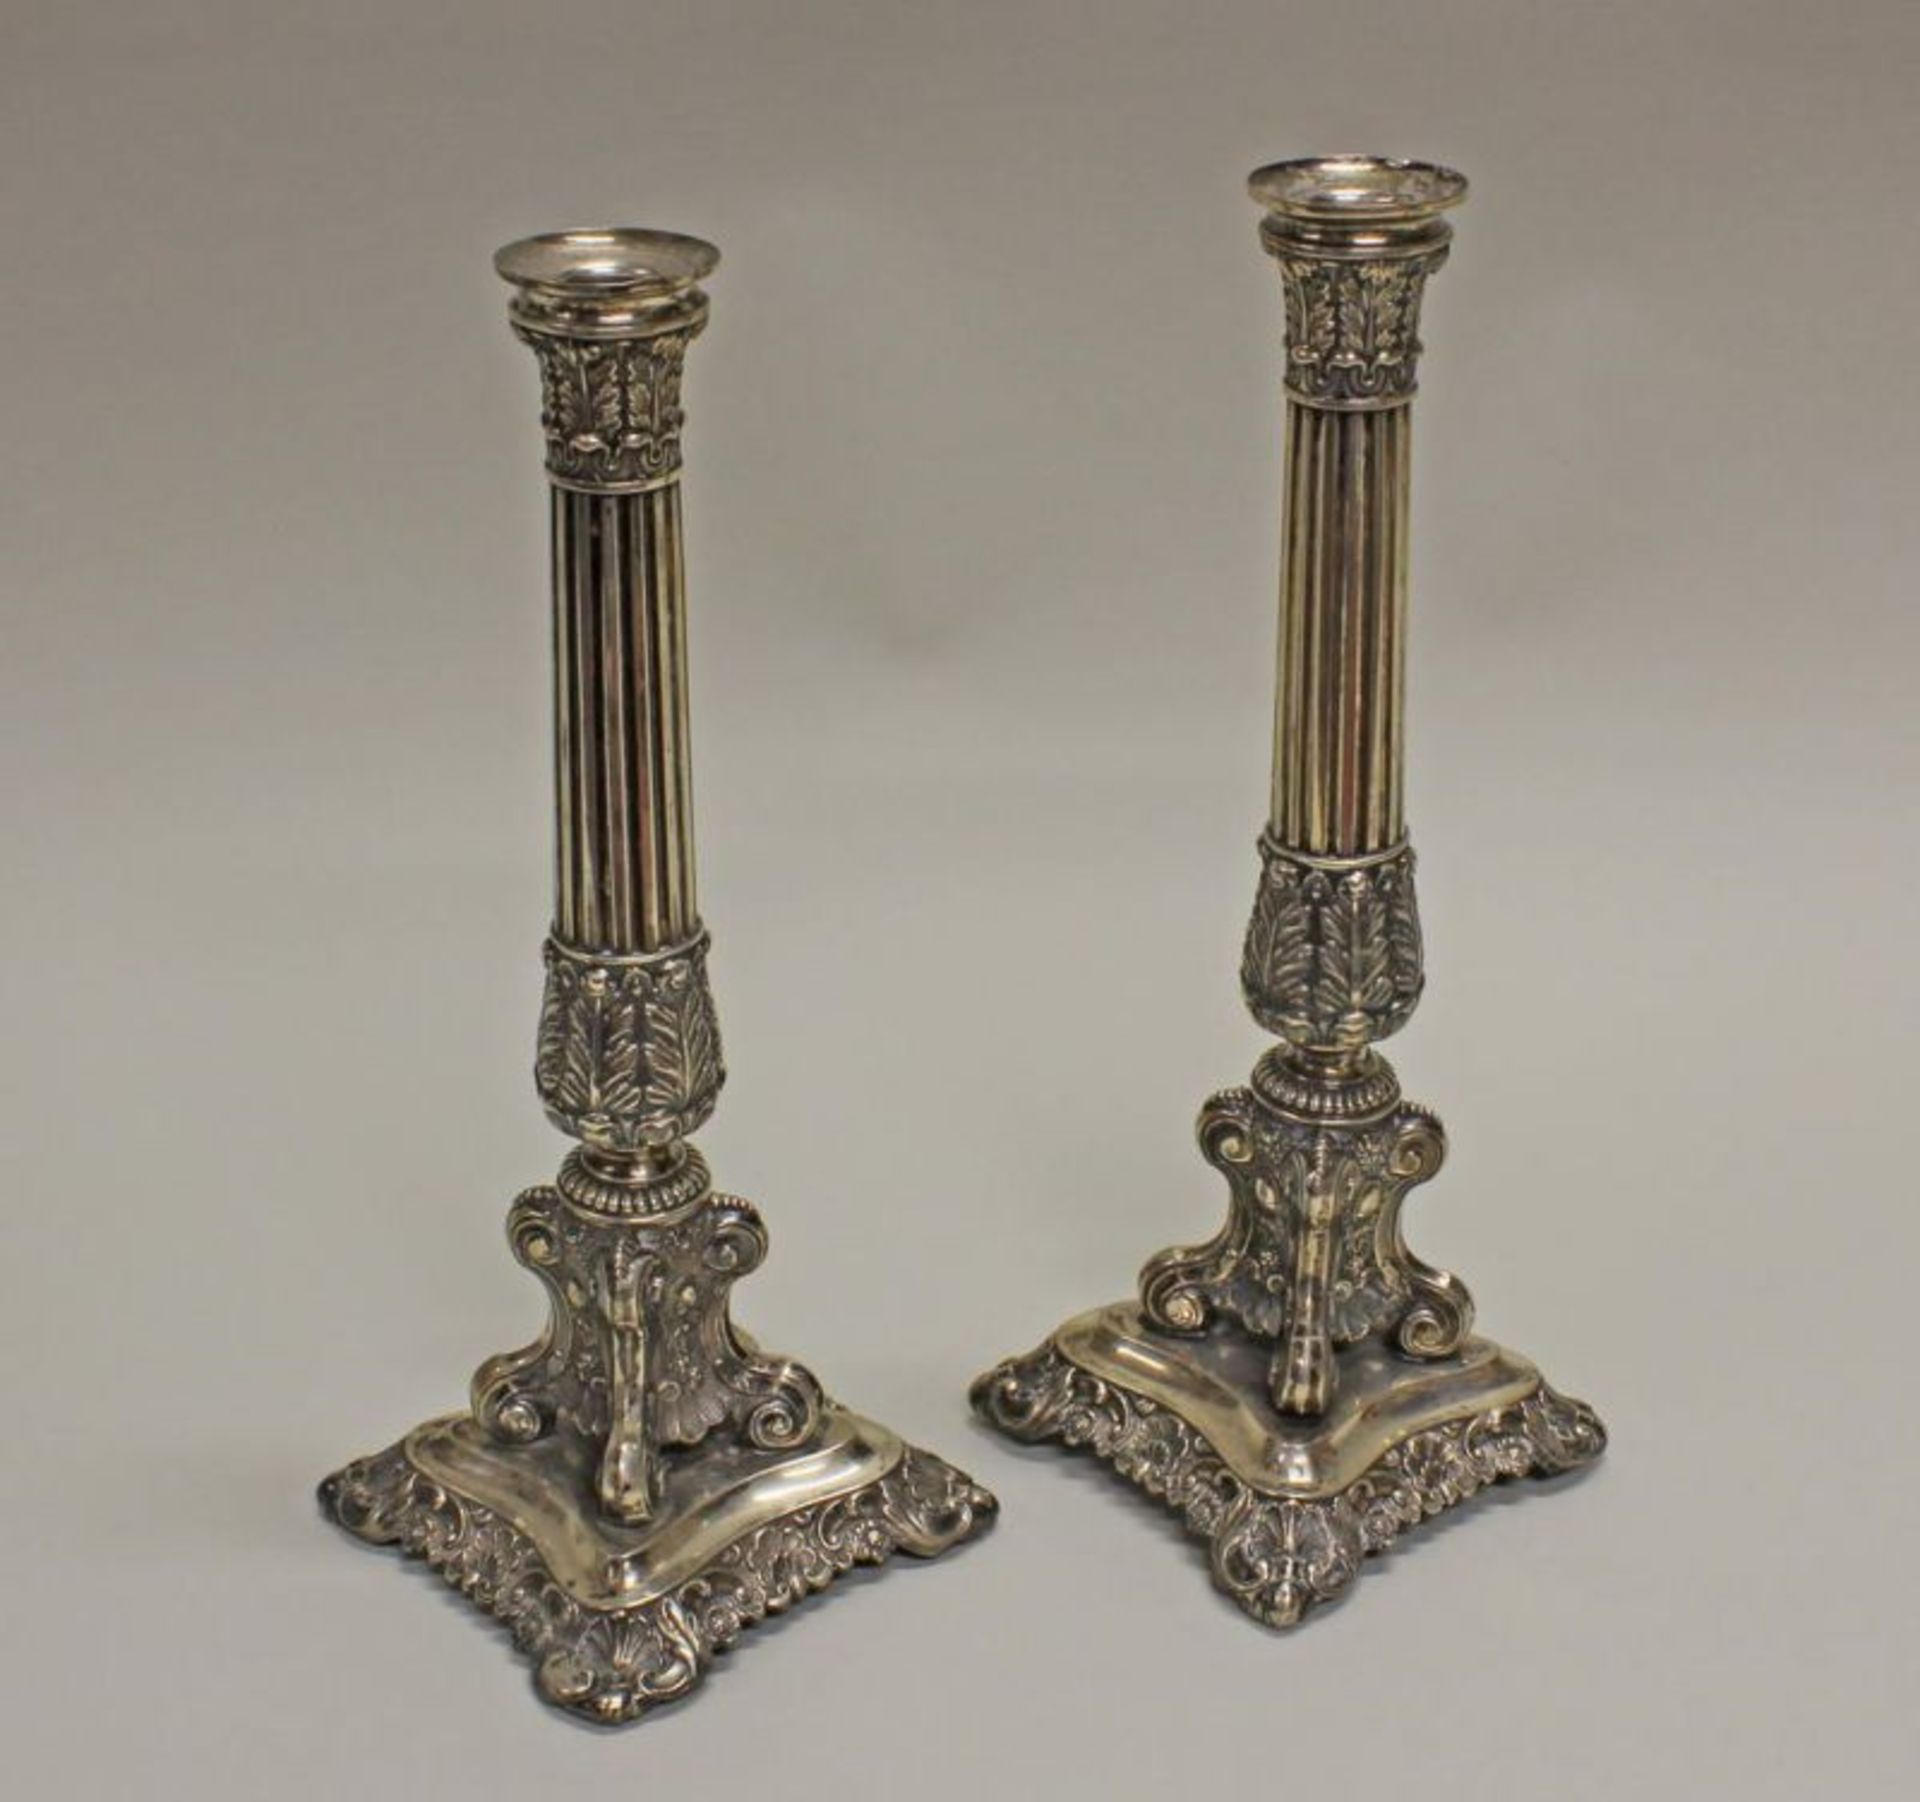 Paar Kerzenleuchter, Silber, ungemarkt, verziert mit Akanthus, Palmetten und Blüten, kannelierter - Image 3 of 3